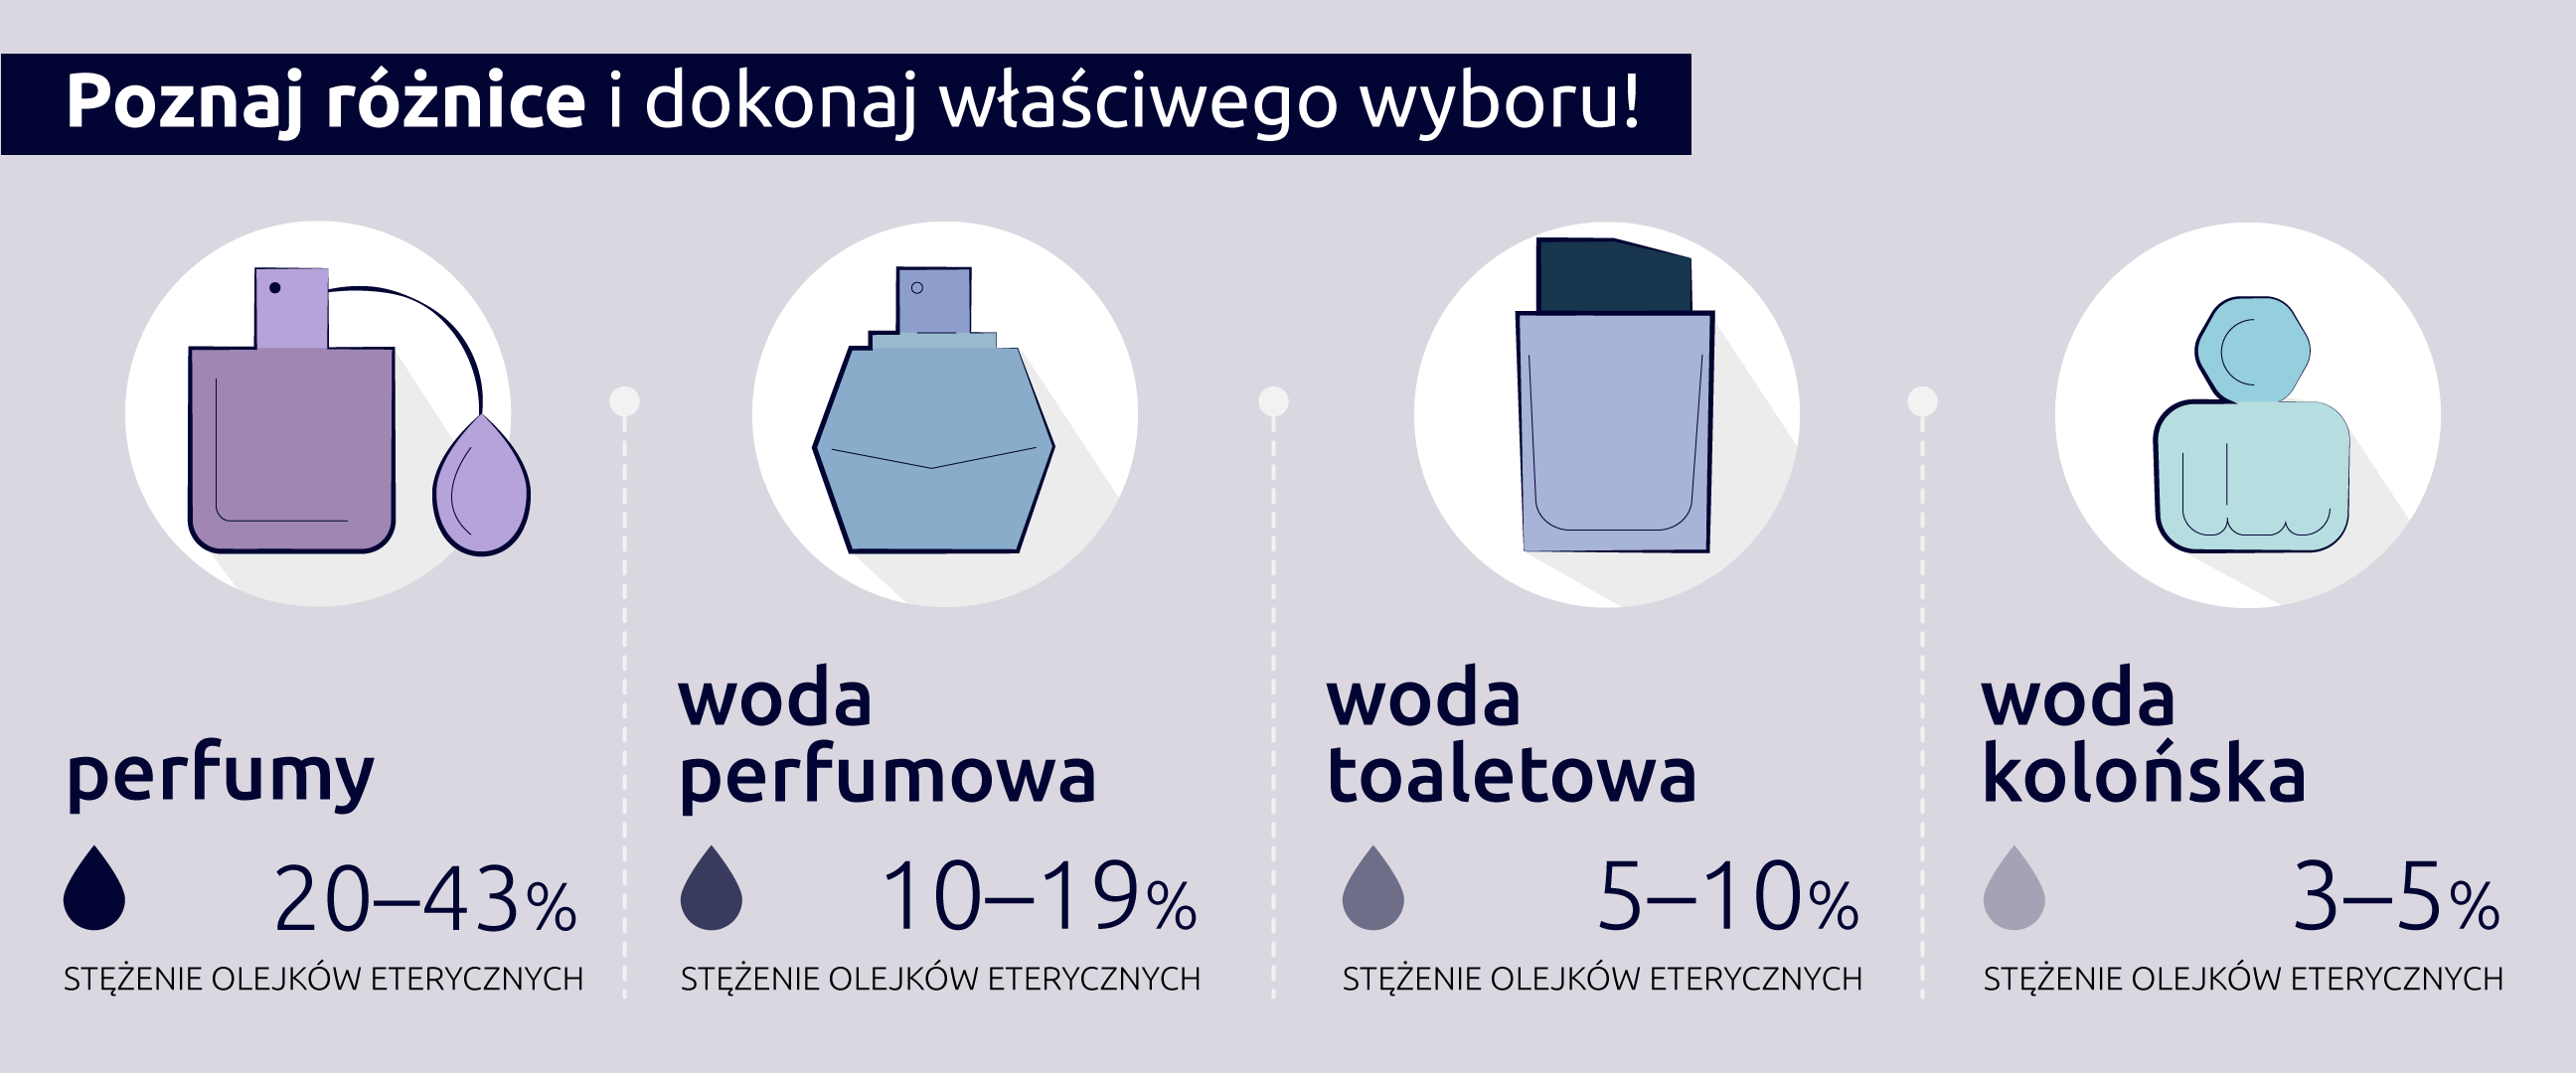 Woda toaletowa czy perfumowana - różnice - infografika